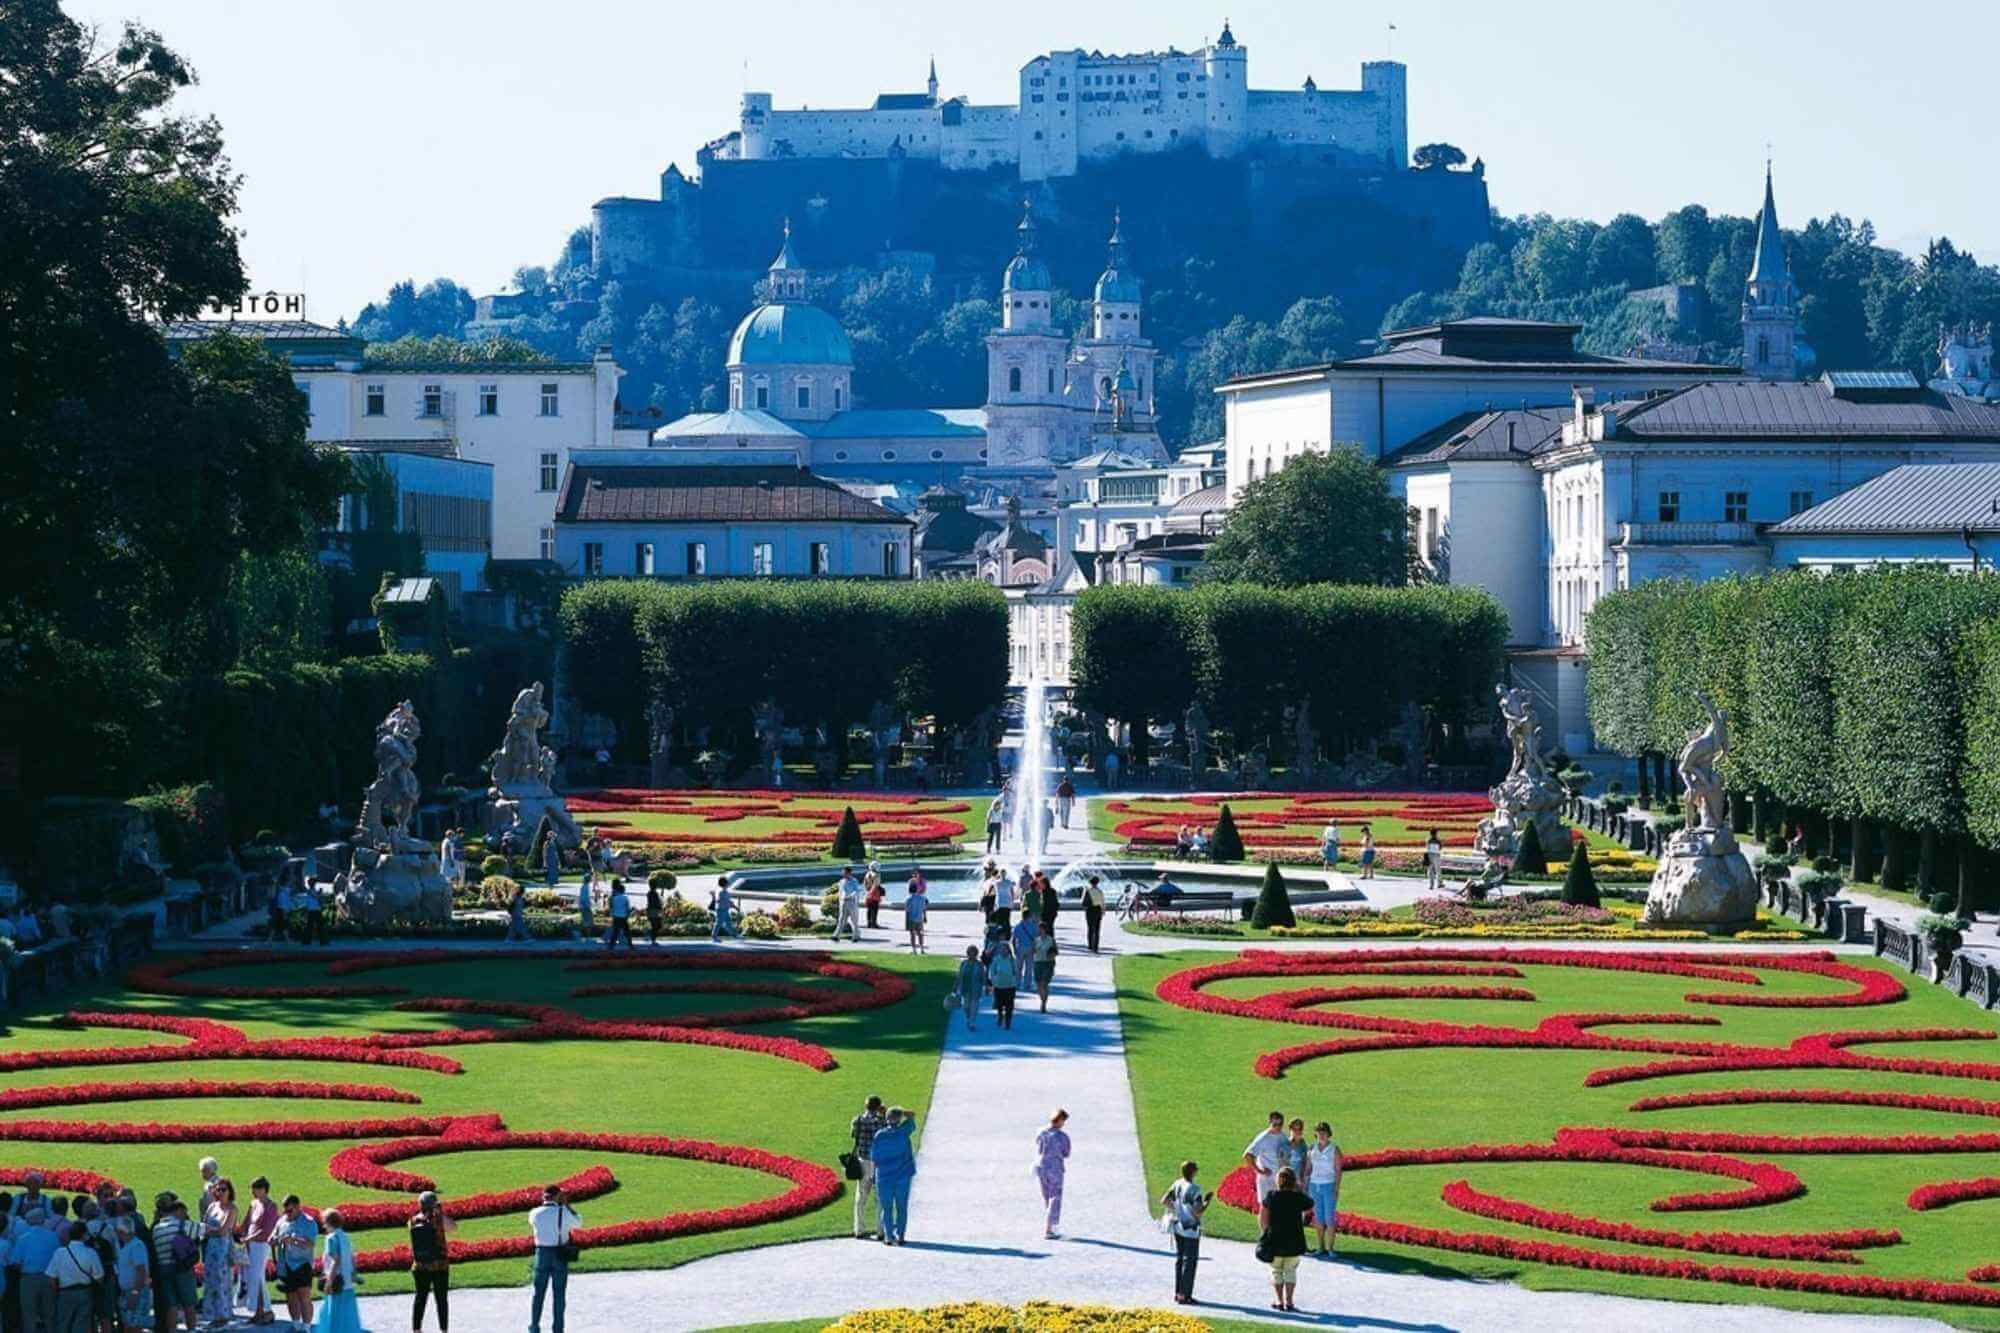 Cheap flights to Salzburg